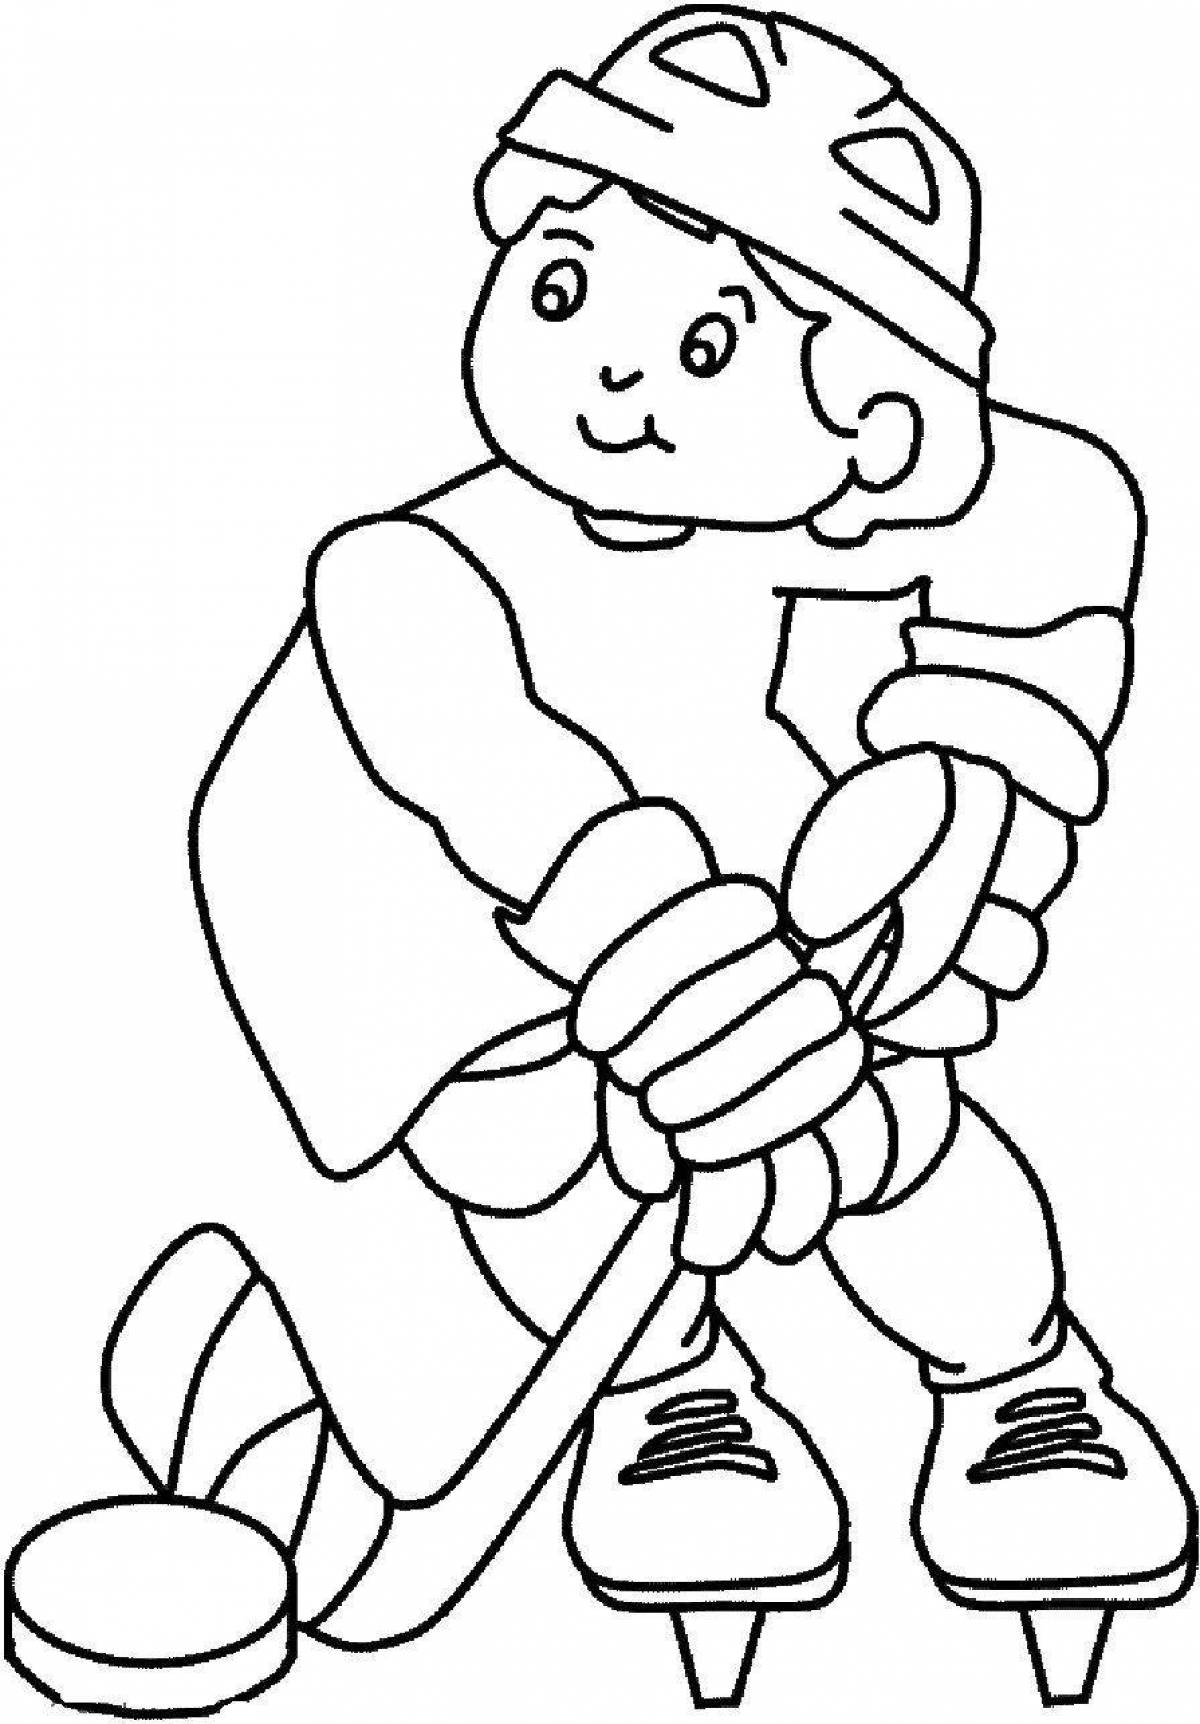 Сказочная спортивная раскраска для детей 6-7 лет